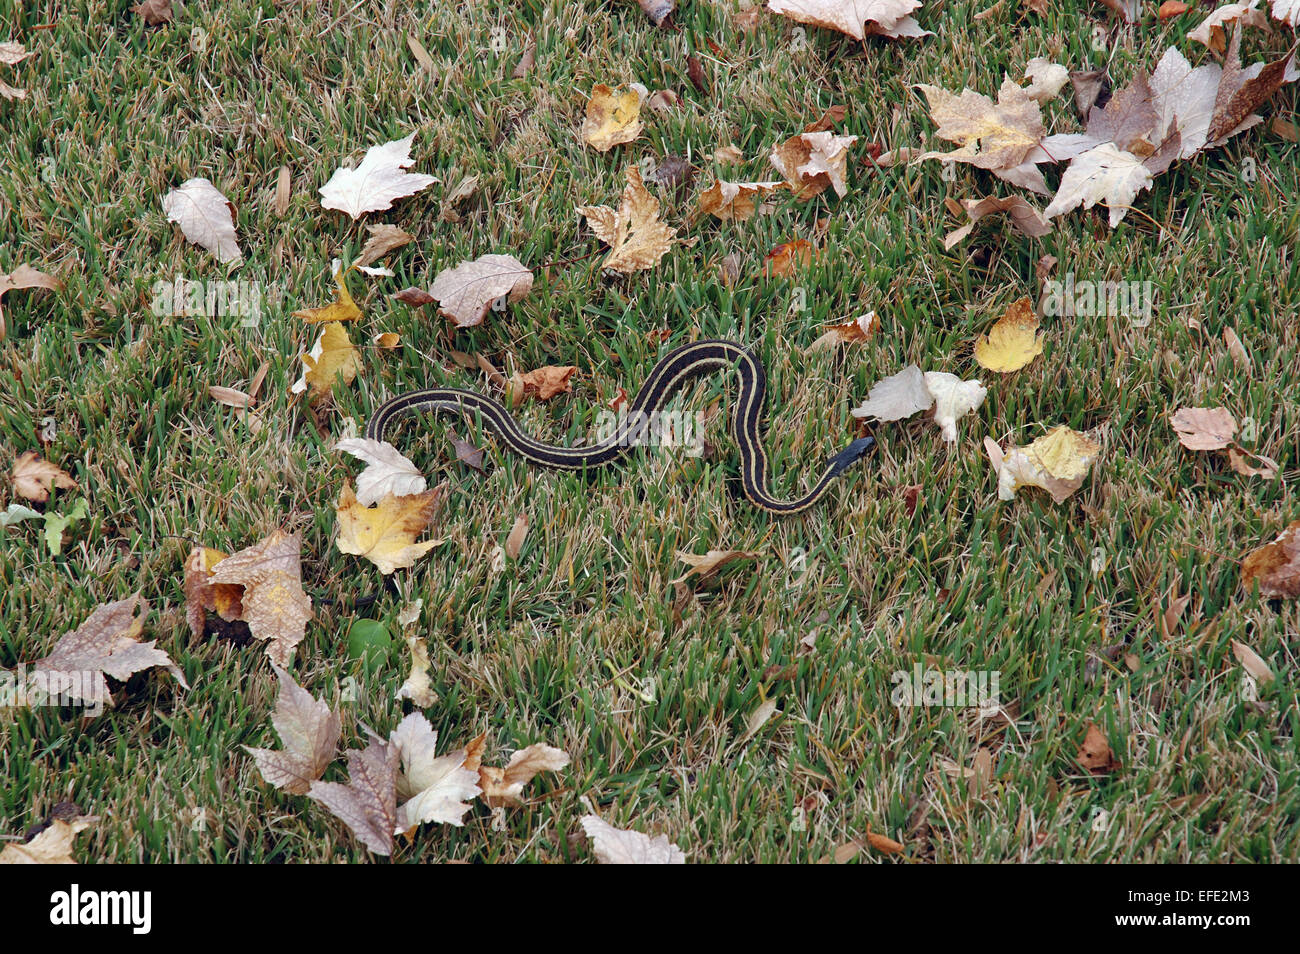 La couleuvre rayée dans l'herbe, sur une pelouse. La couleuvre rayée est un genre de serpents Colubridae communs à l'ensemble de l'Amérique du Nord. Banque D'Images